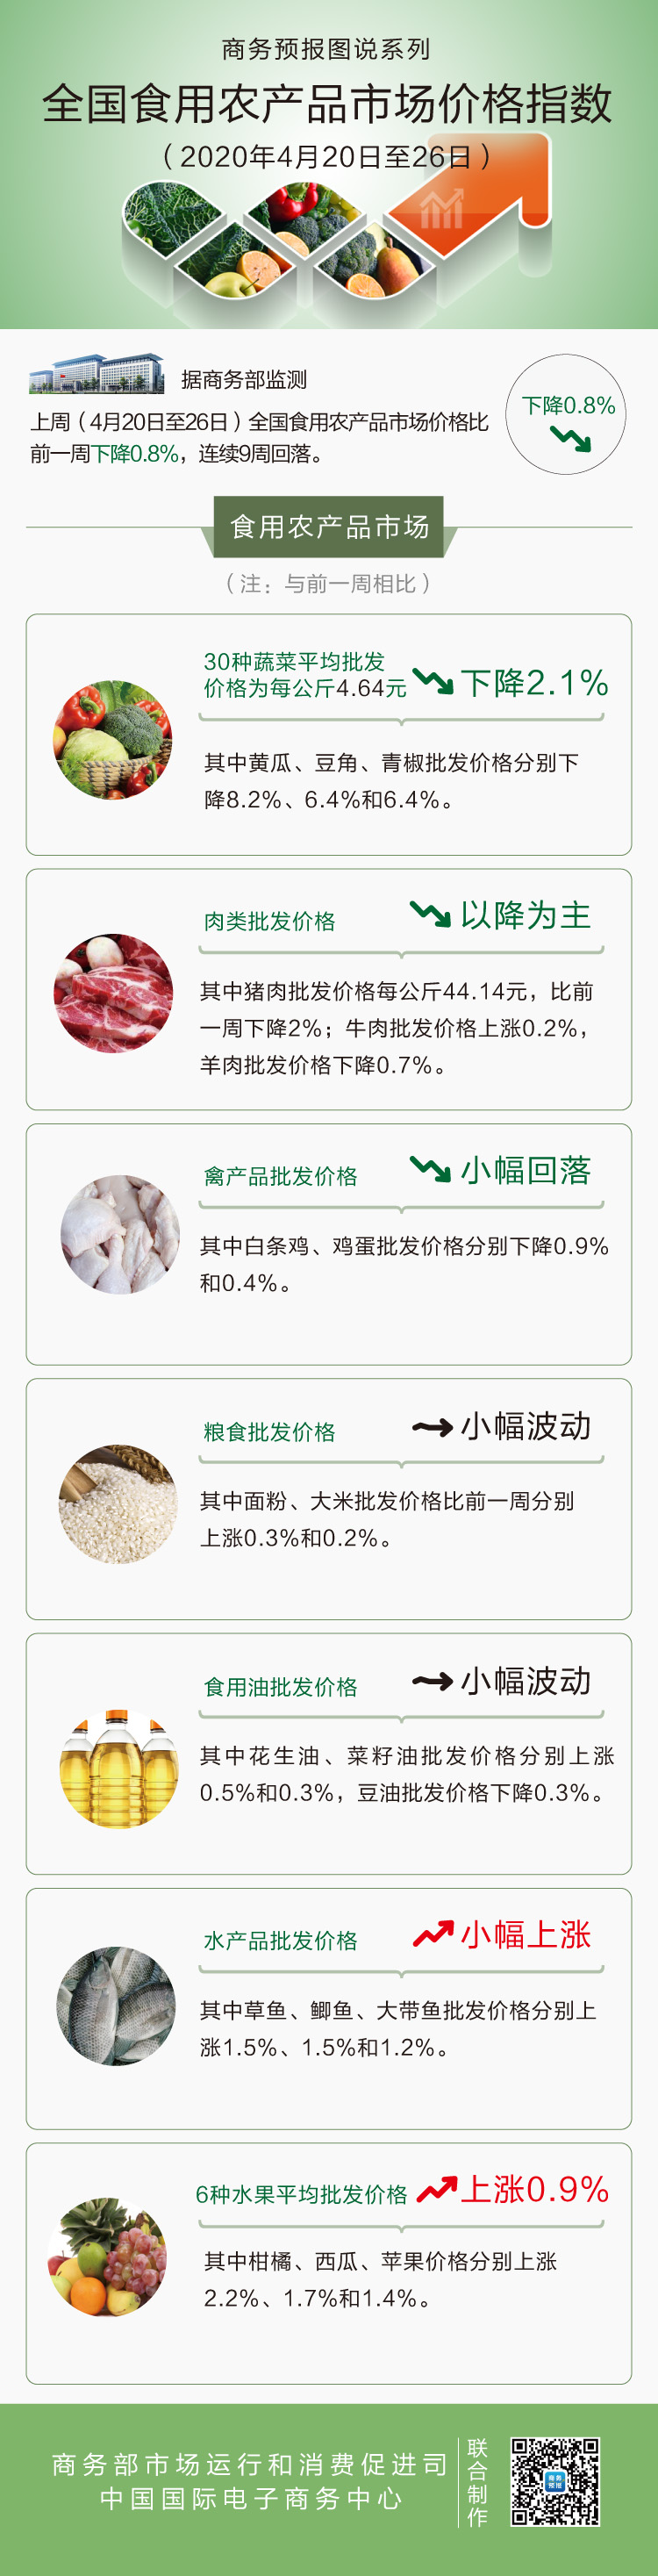 4月第4周食用农产品价格小幅回落 猪肉下降2%